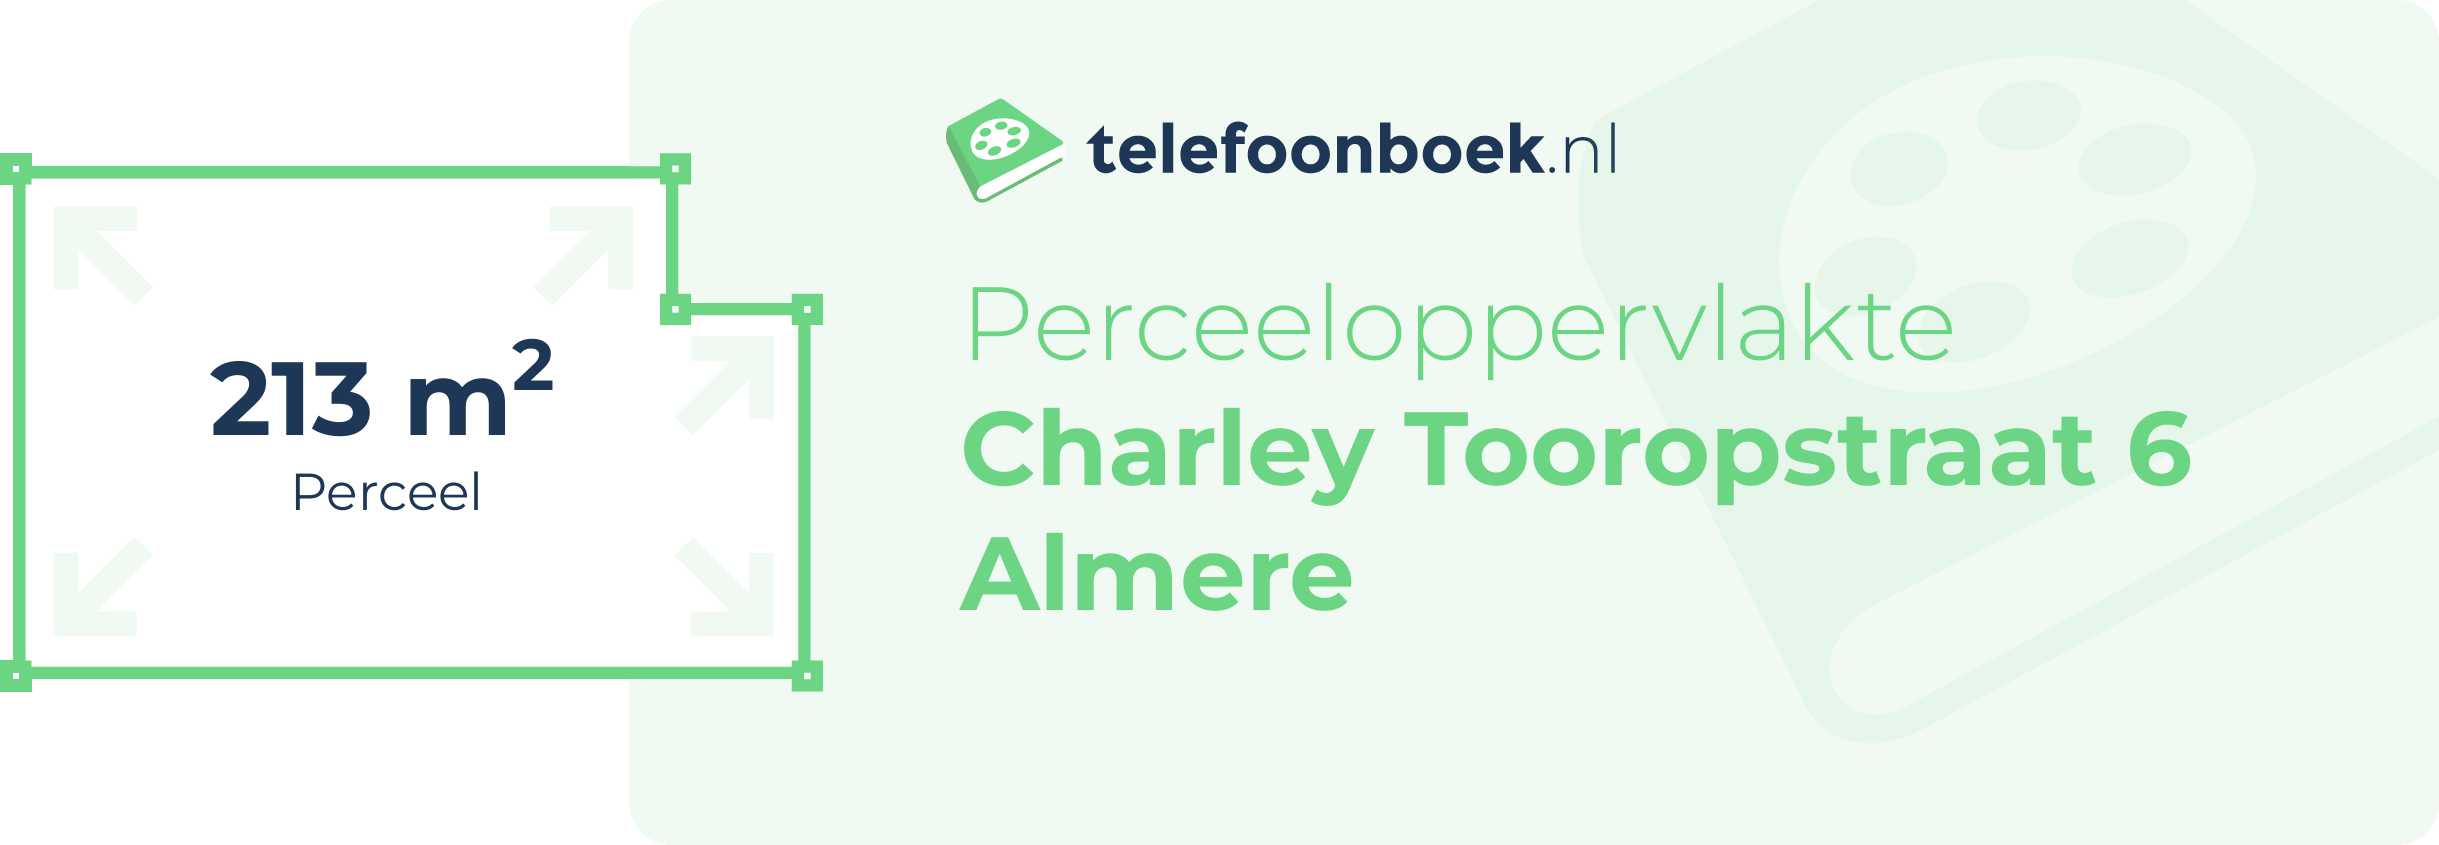 Perceeloppervlakte Charley Tooropstraat 6 Almere